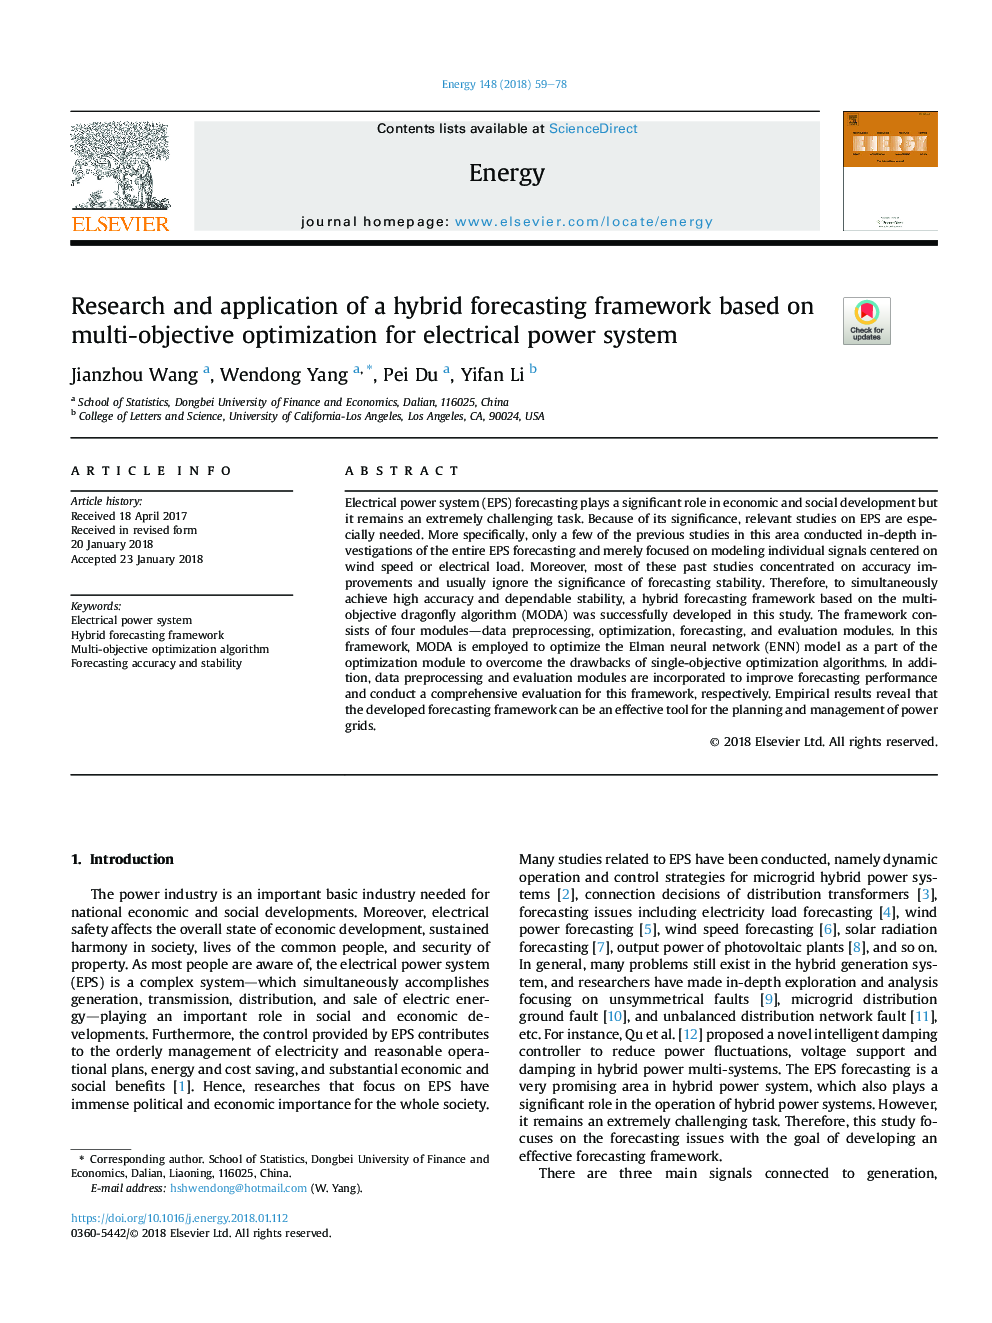 تحقیق و کاربرد یک چارچوب پیش بینی ترکیبی مبتنی بر بهینه سازی چند منظوره برای سیستم قدرت الکتریکی 